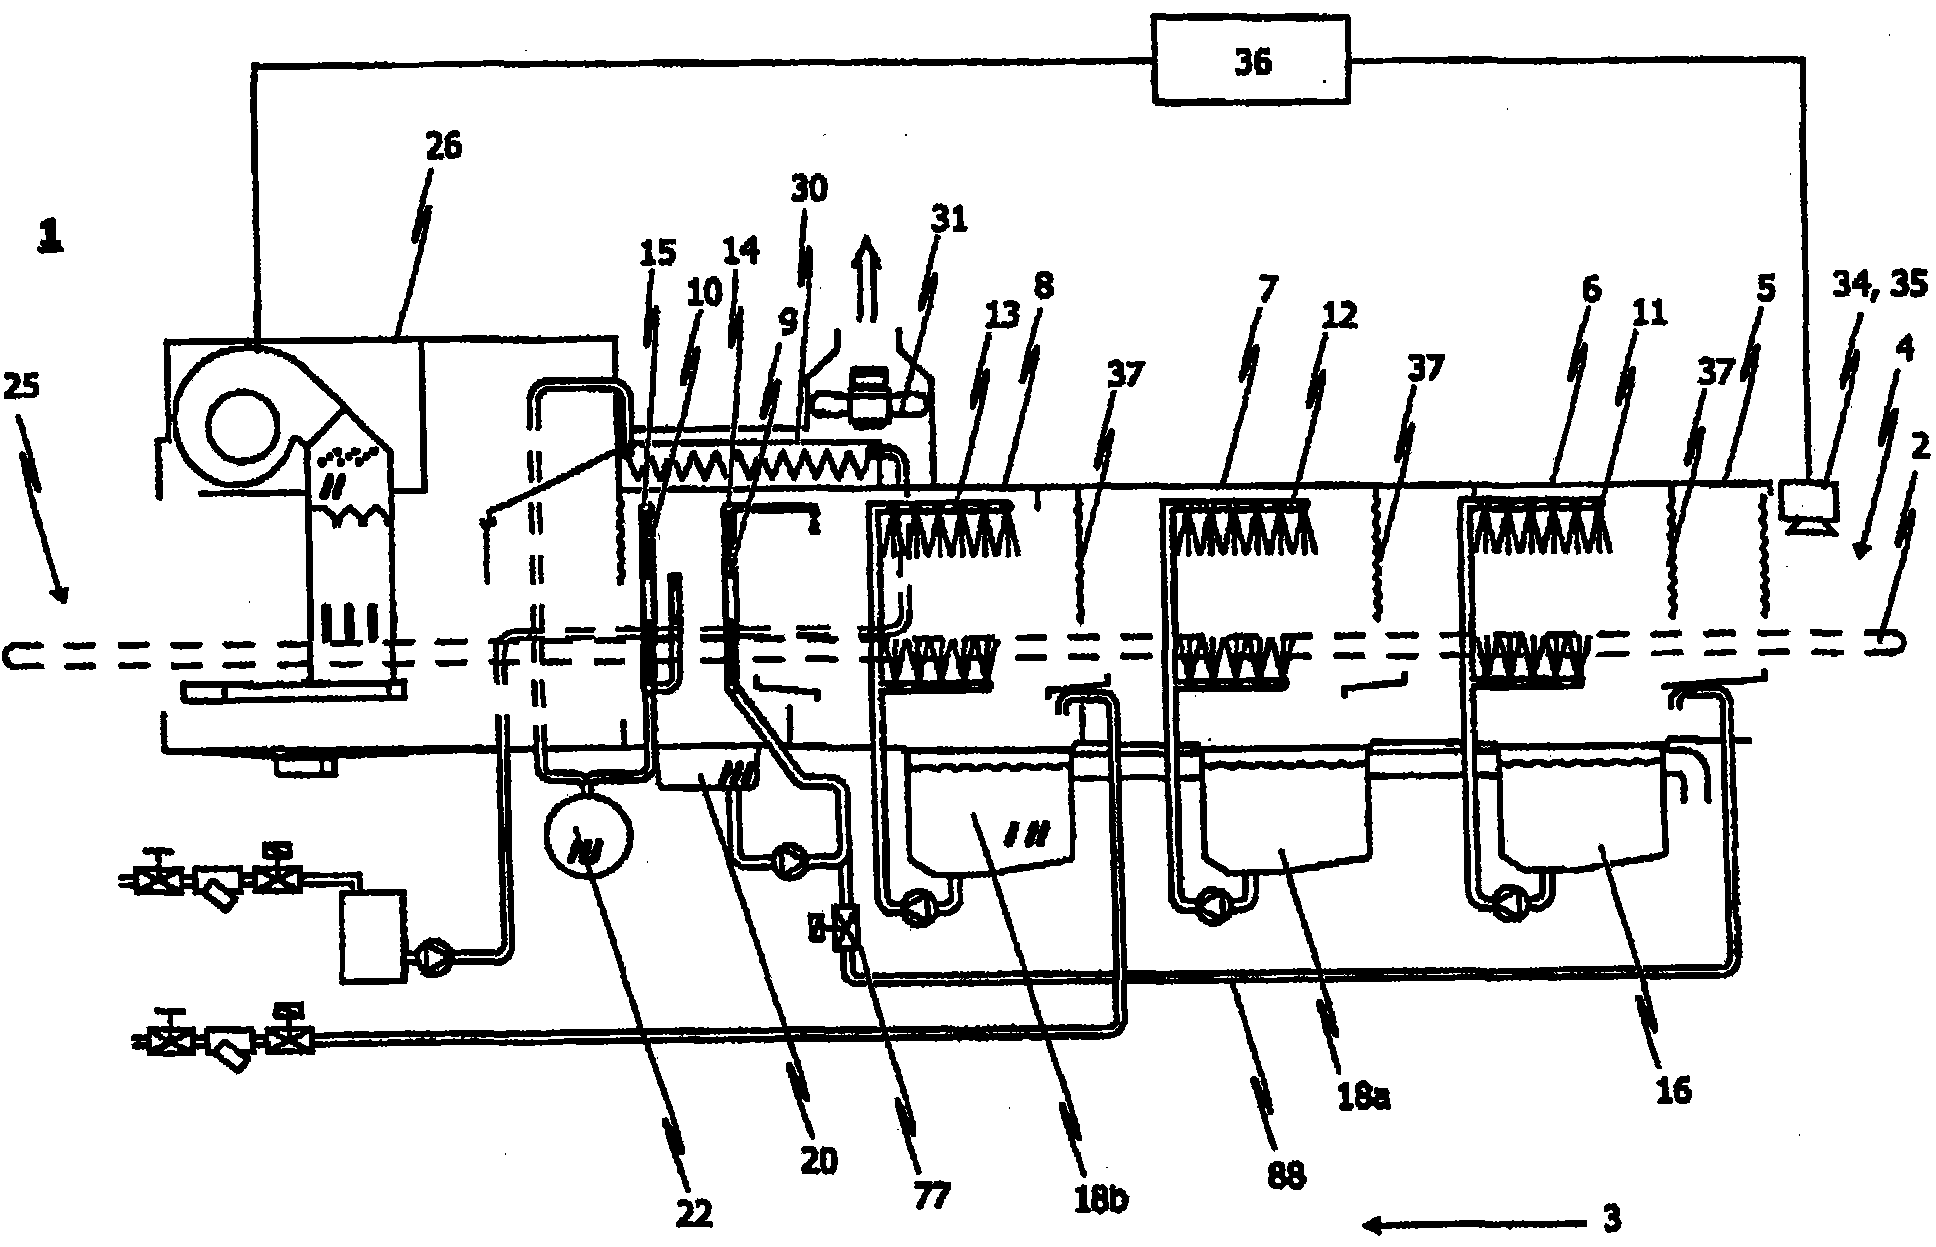 Conveyor dishwasher and method of operating a conveyor dishwasher